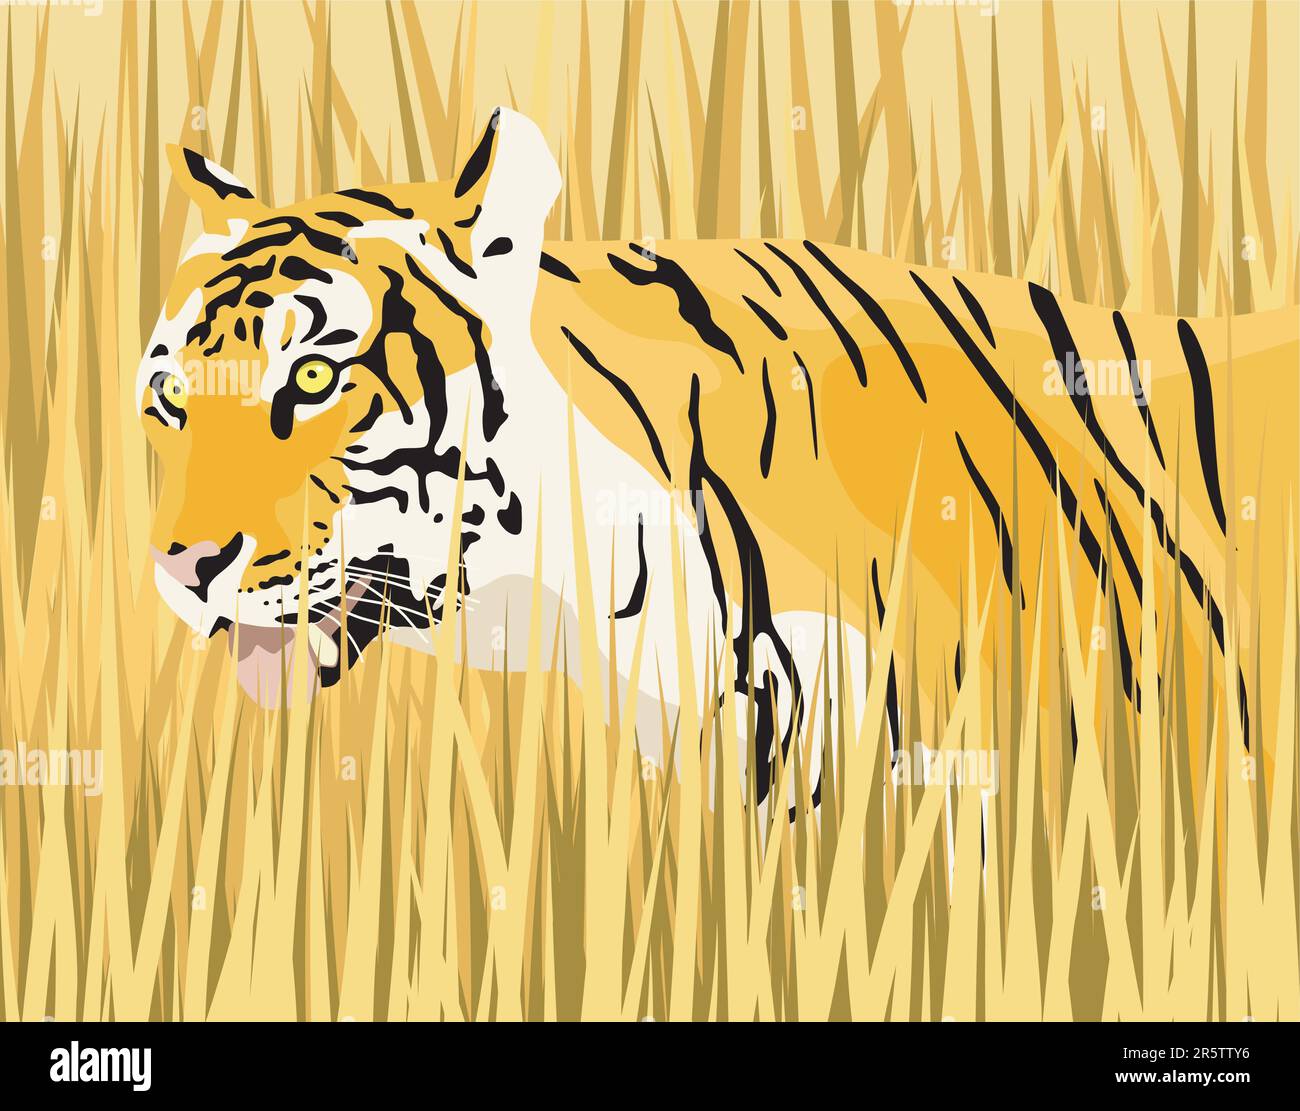 Illustrazione vettoriale di una tigre in erba secca con tiger e erba come elementi separati Illustrazione Vettoriale